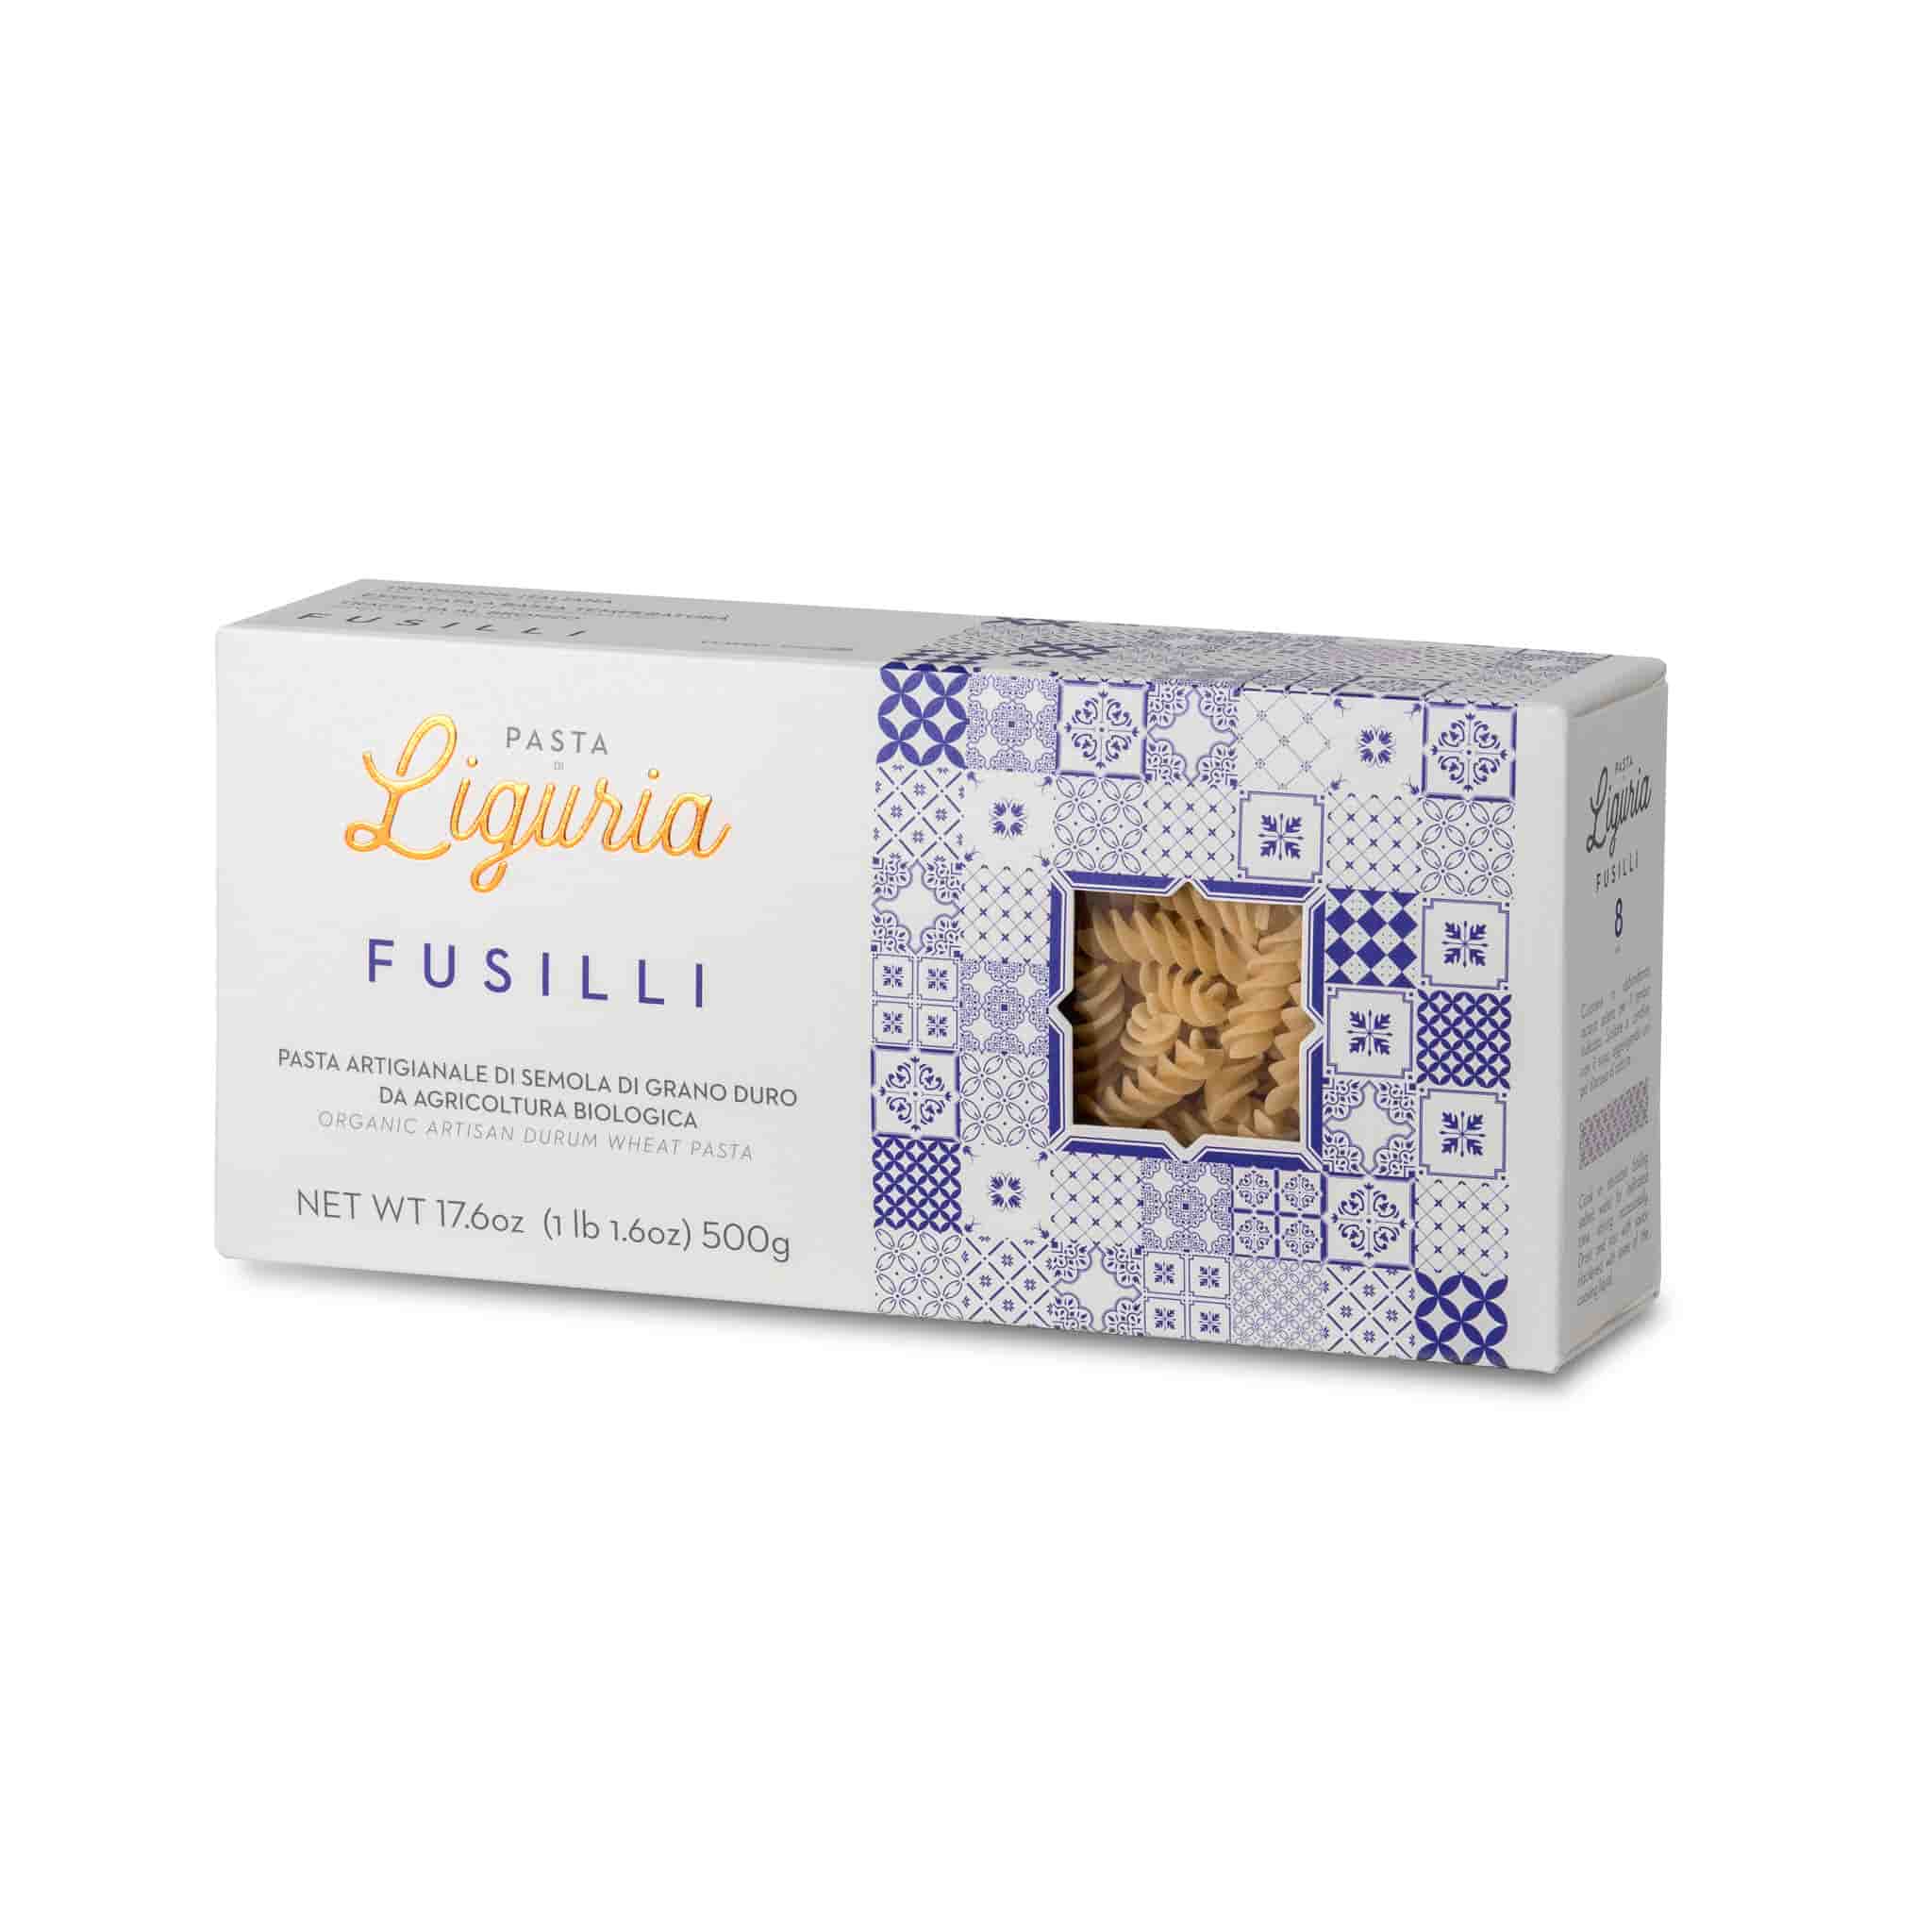 Pasta Liguria Fusilli, 500g